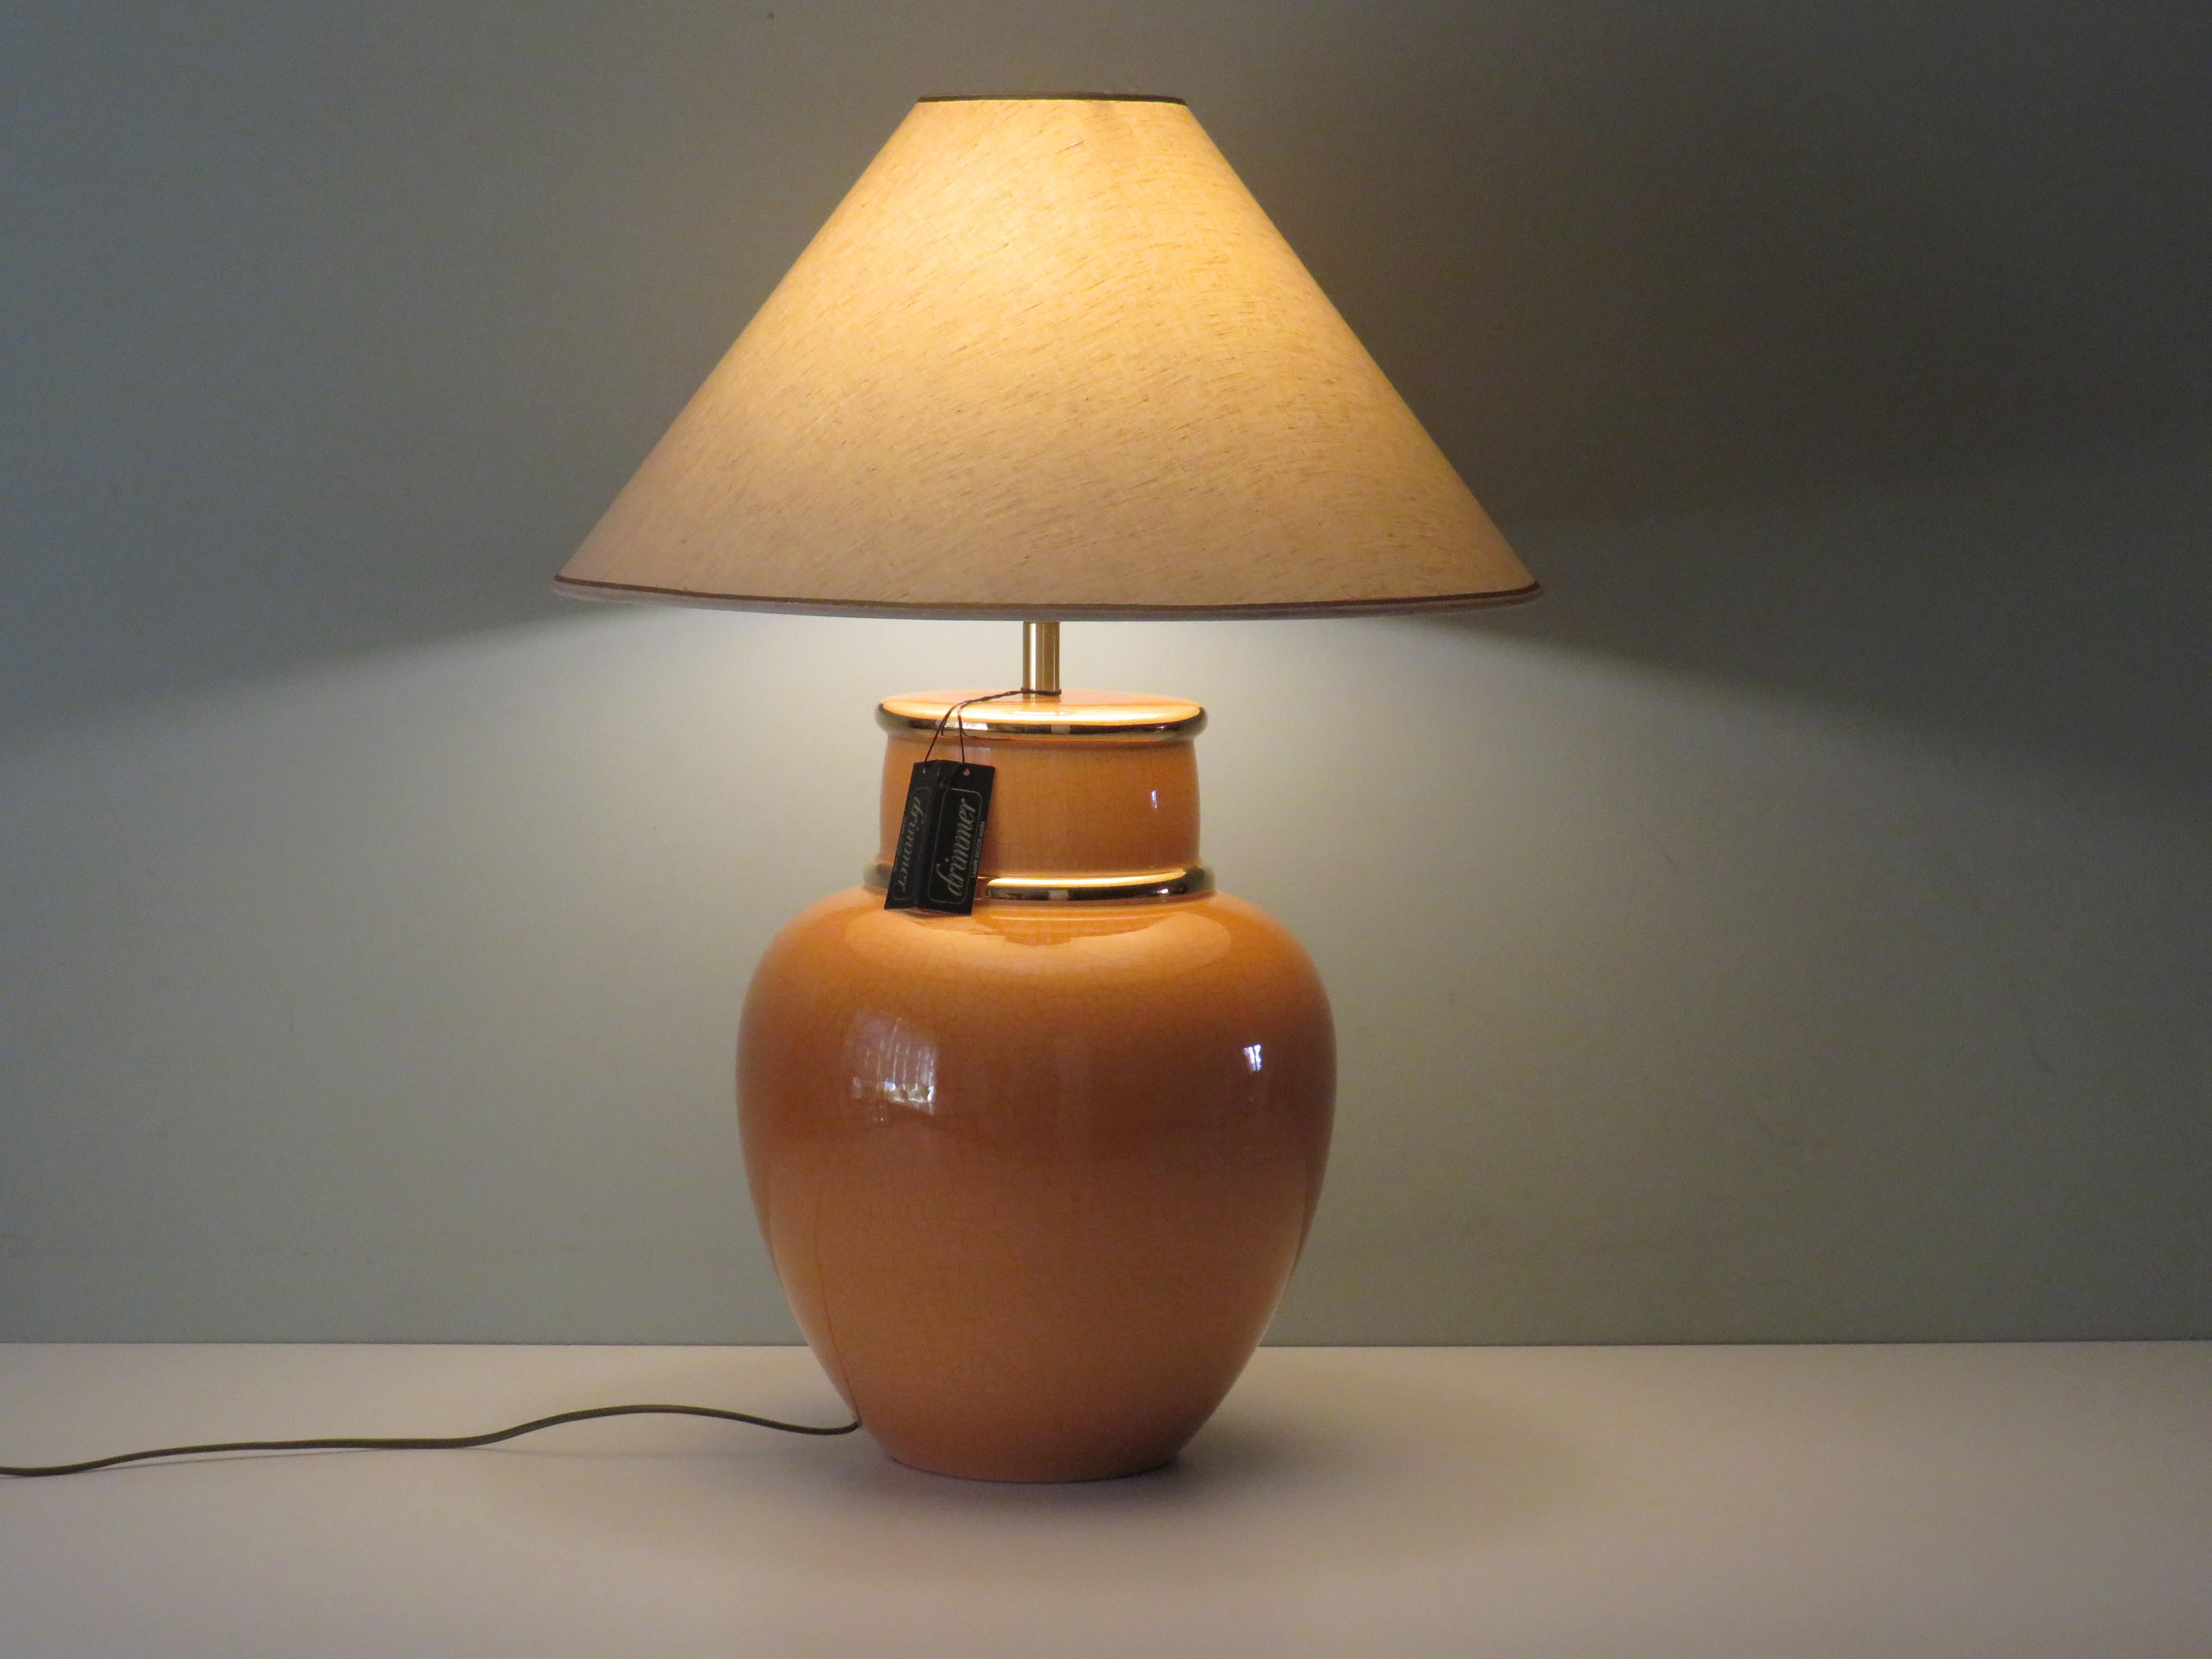 Base de lampe en céramique émaillée craquelée avec des accents dorés et l'abat-jour original en lin beige fini avec des bords dorés.
La base de la lampe est signée et étiquetée par Louis Drimmer.
La hauteur de la base de la lampe est de 51 cm et